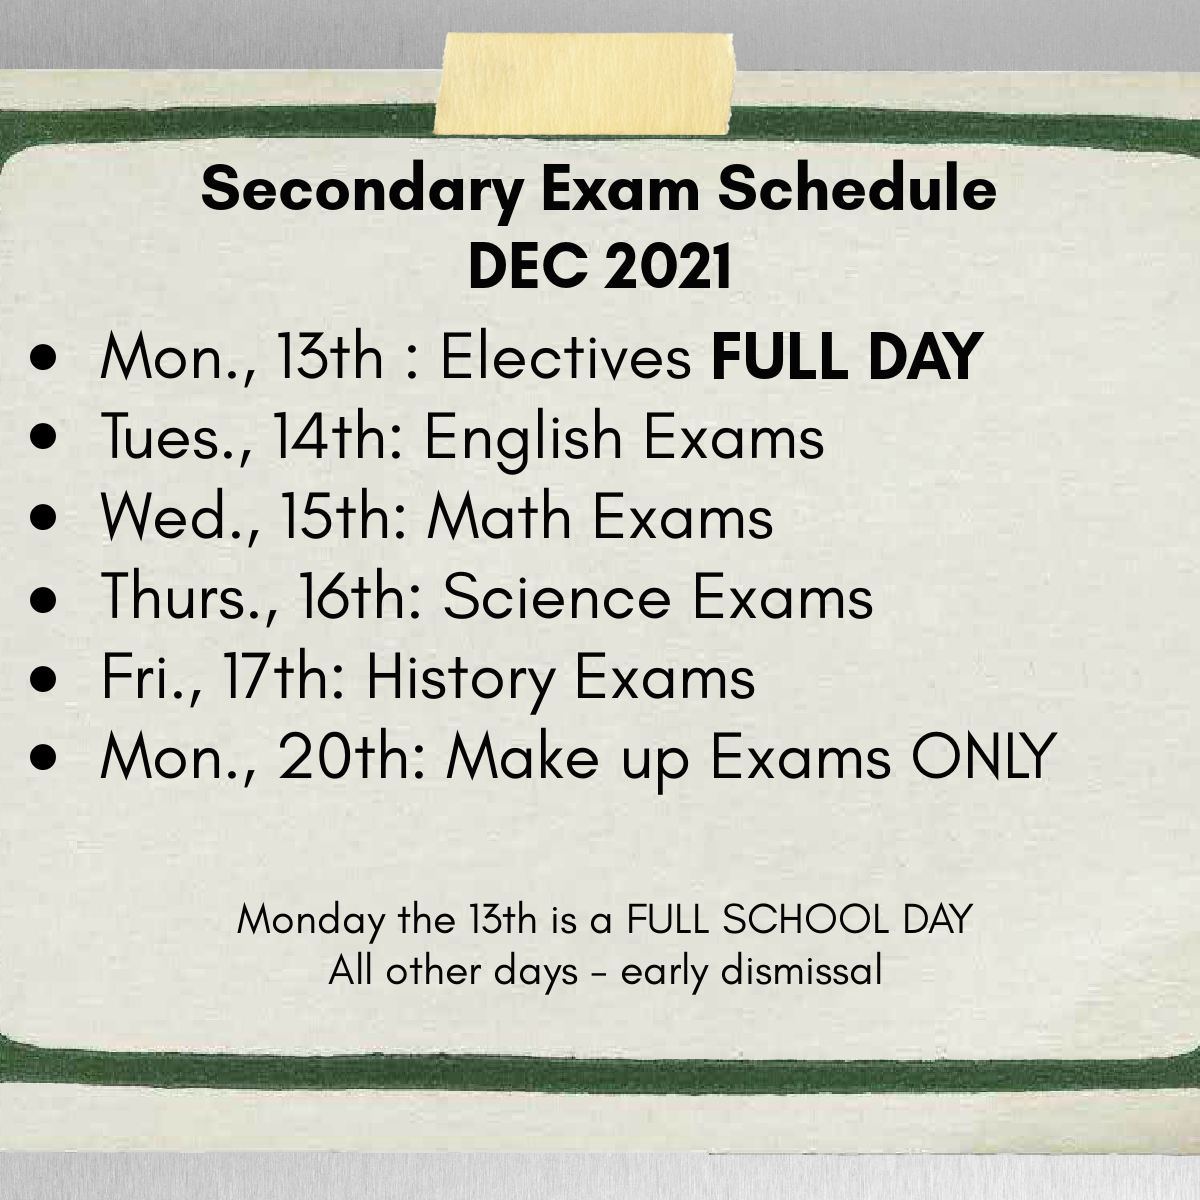 exam schedule